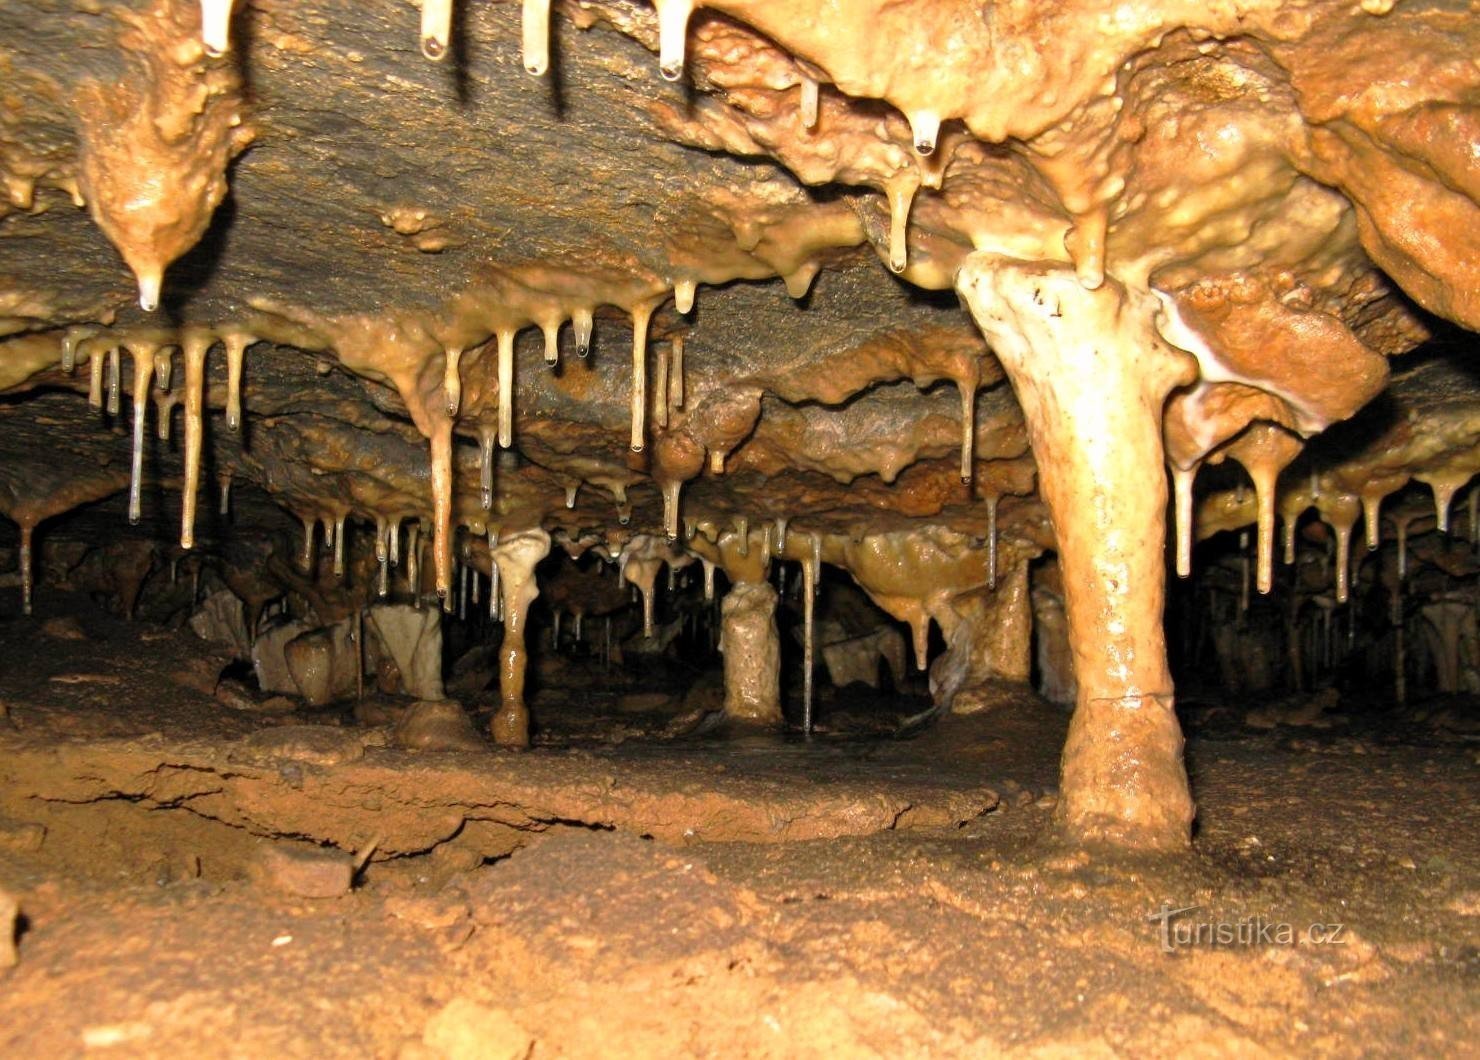 ホルスタイン洞窟の鍾乳石の装飾